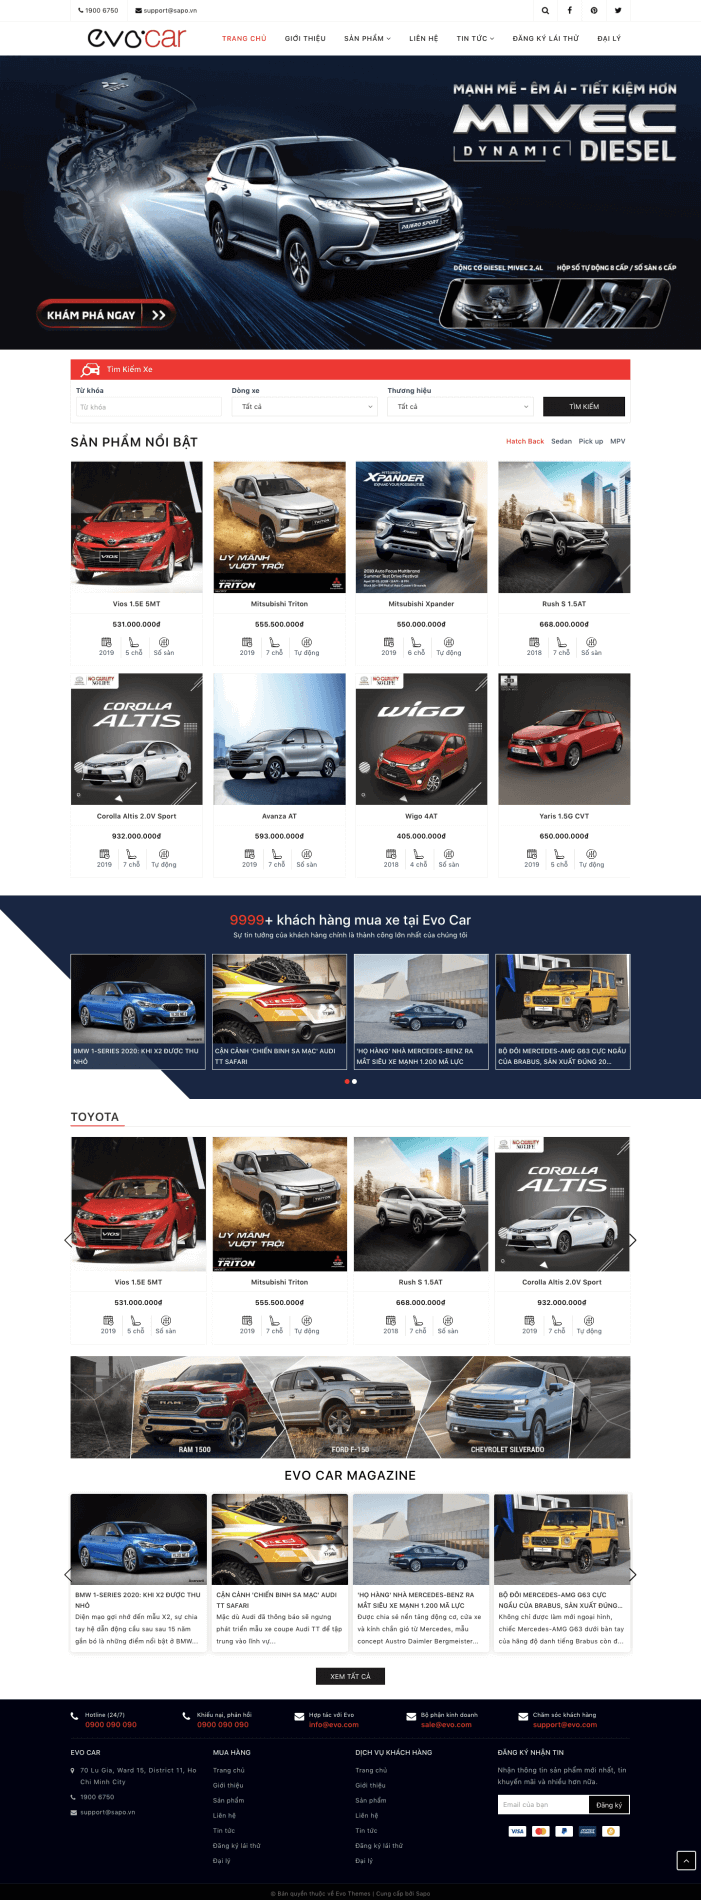 Giao diện website bán hàng Ô tô, xe máy Evo Car 8